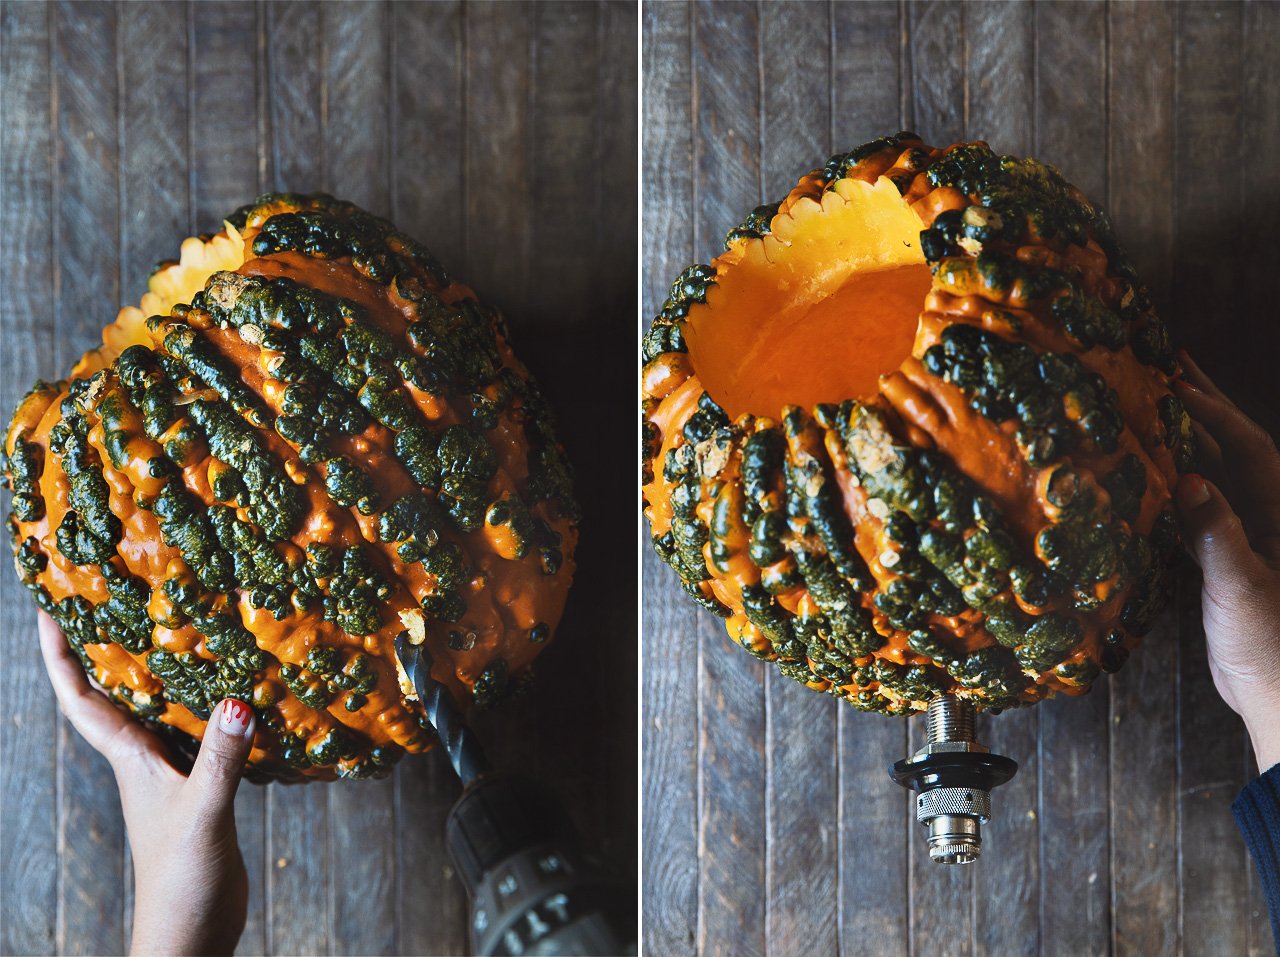 How to make a pumpkin keg